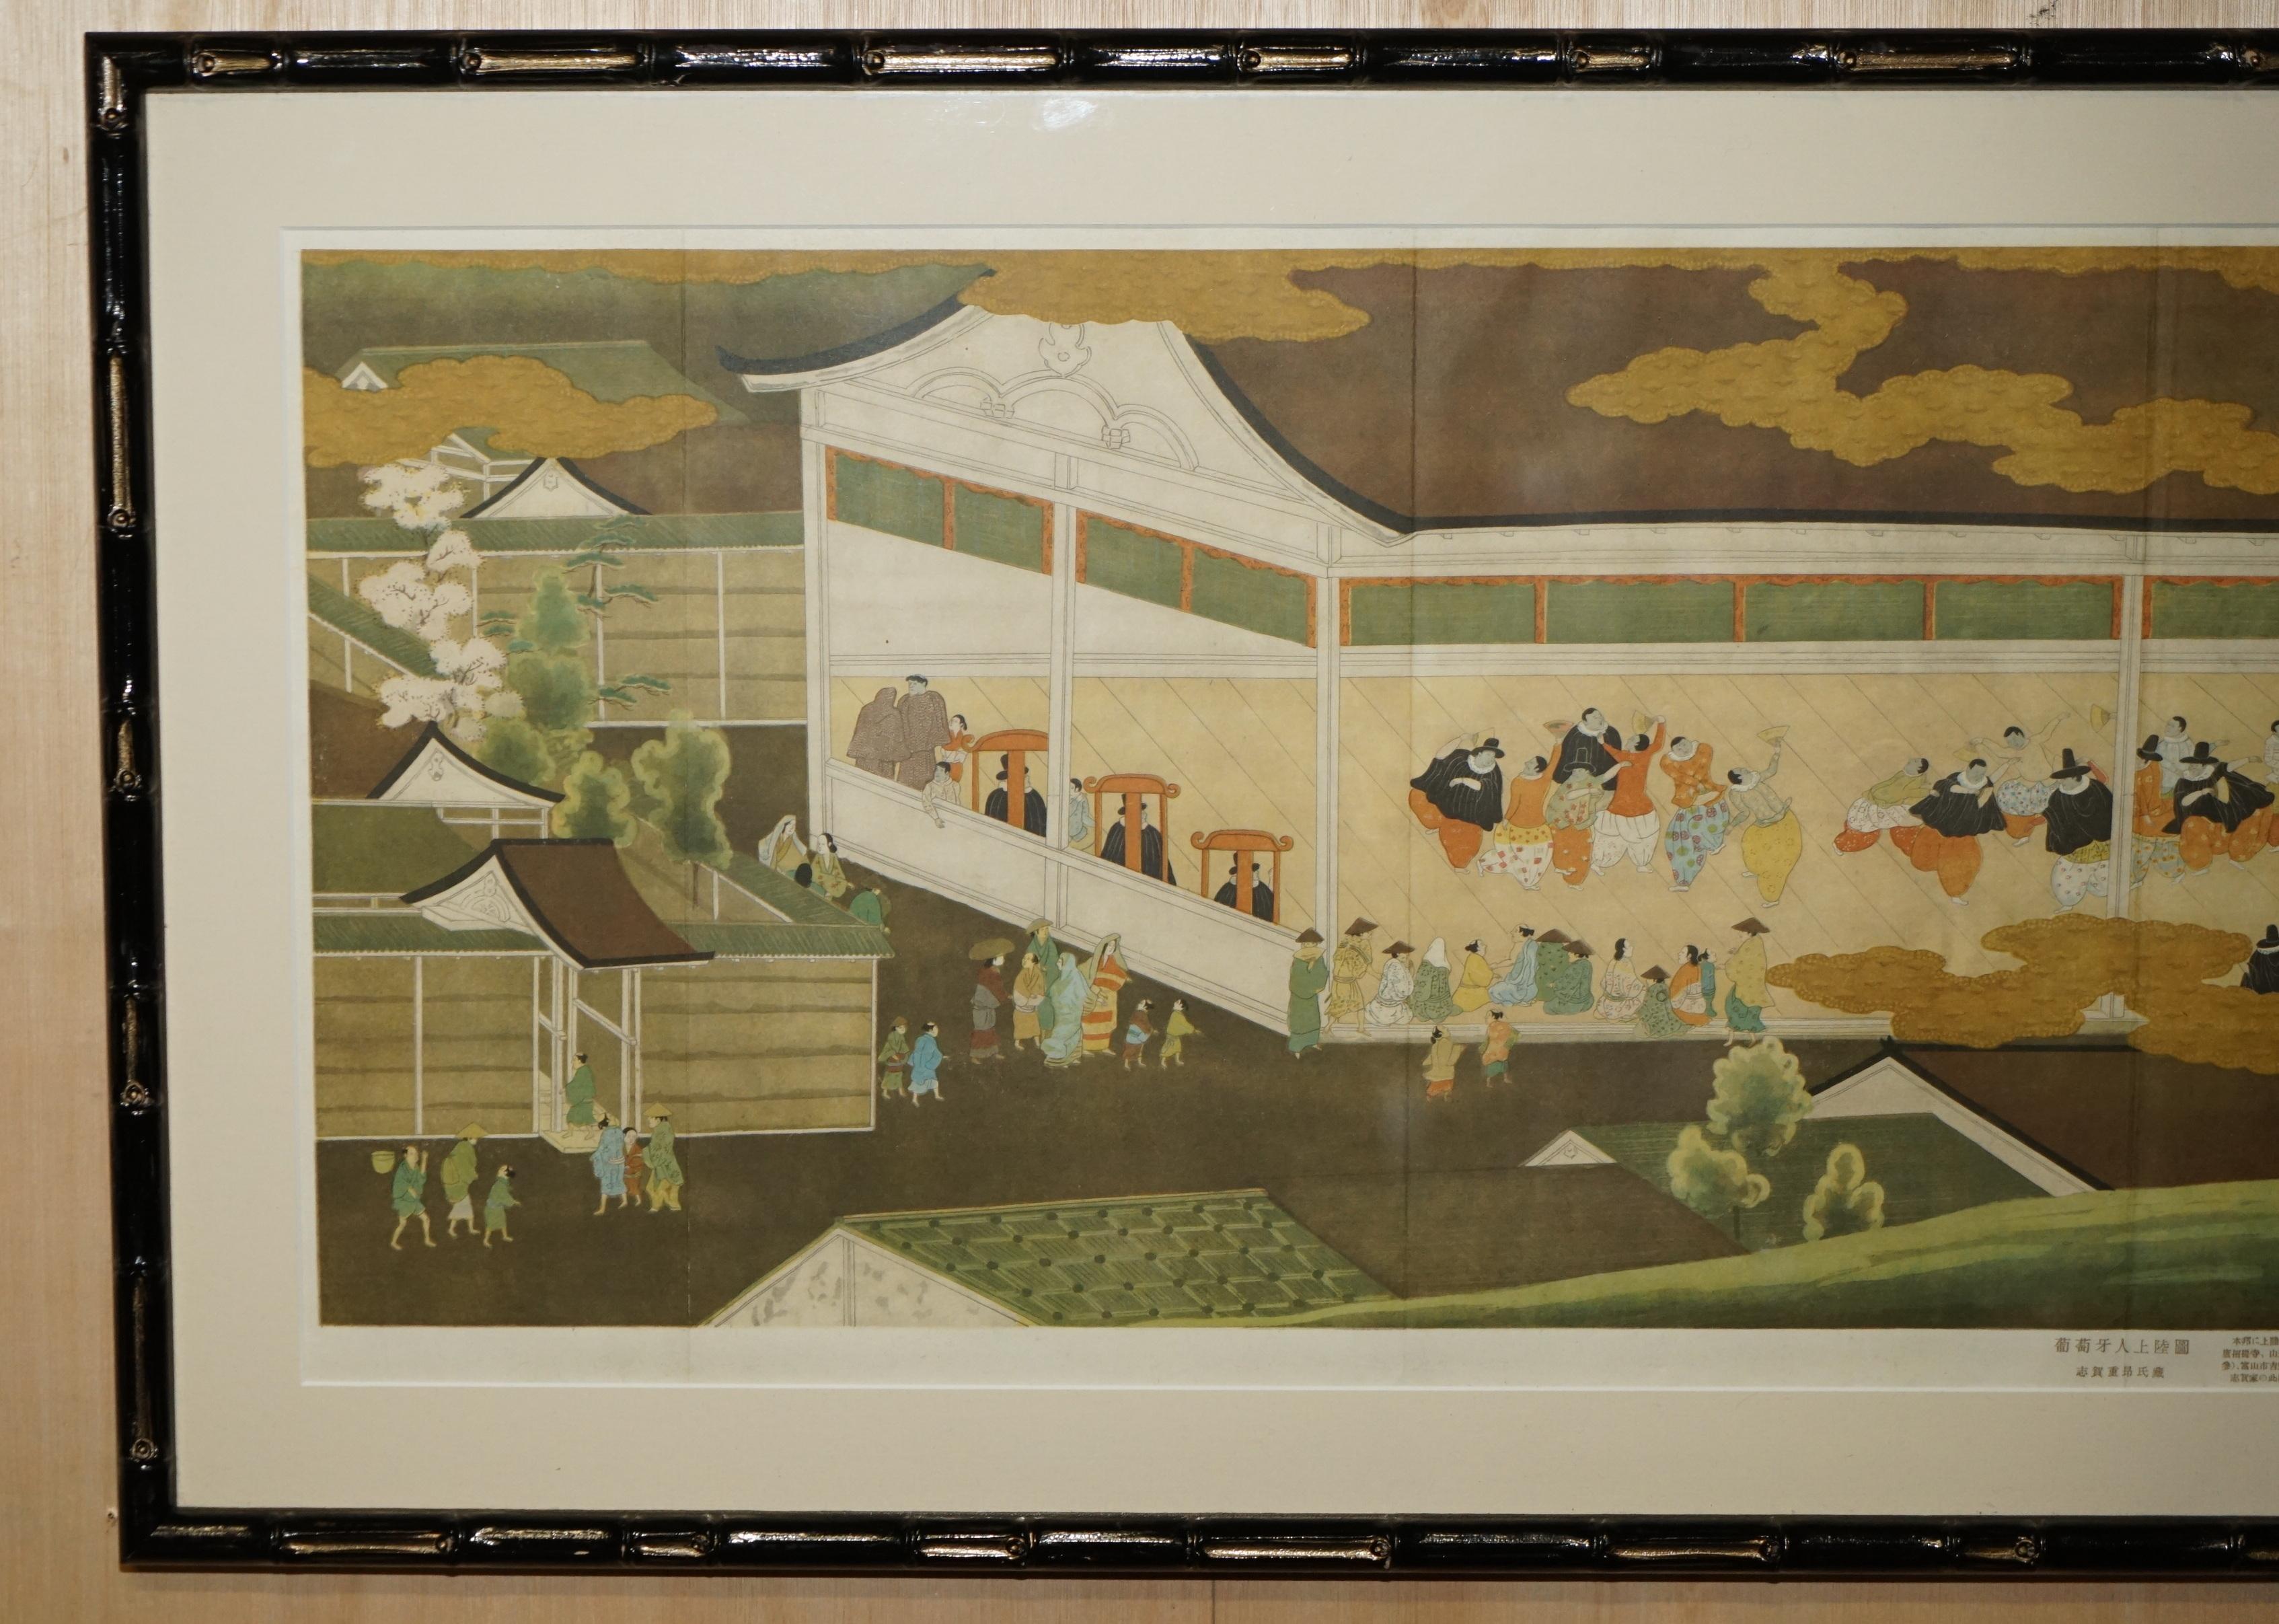 Royal House Antiques

Royal House Antiques ist erfreut, diesen atemberaubenden originalen japanischen Druck aus der Meiji-Periode um 1880 des Familienanwesens von Shiga Shigeaki in dem originalen, aus Bambus geschnitzten Rahmen zum Verkauf